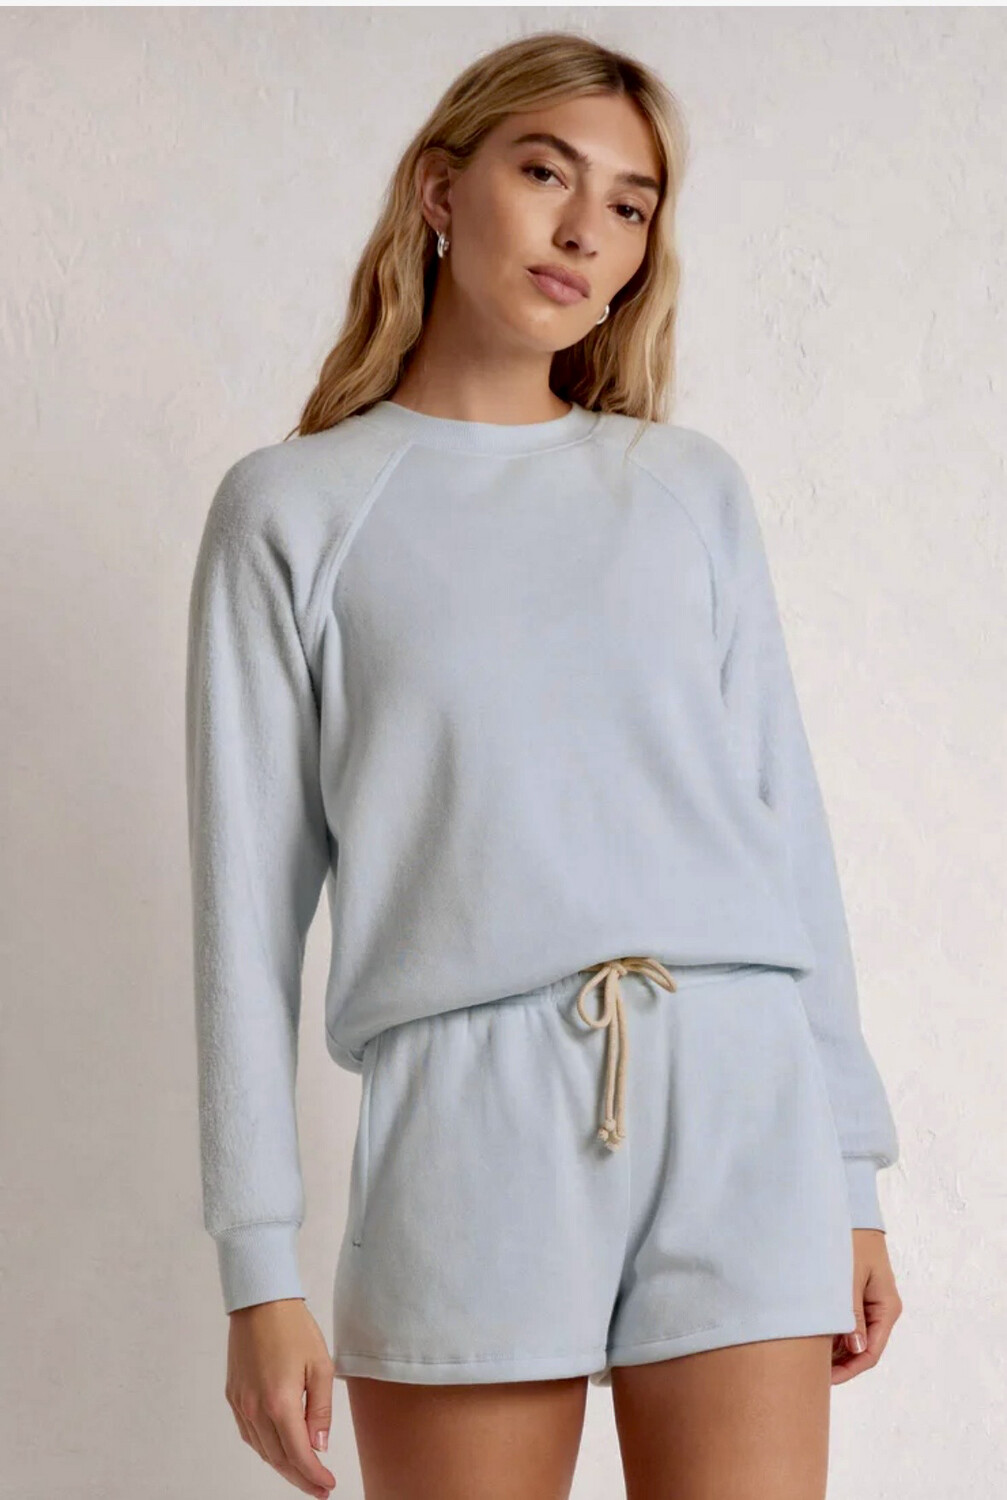 Blue Reversible Long Sleeve Fleece ZSupply Shirt